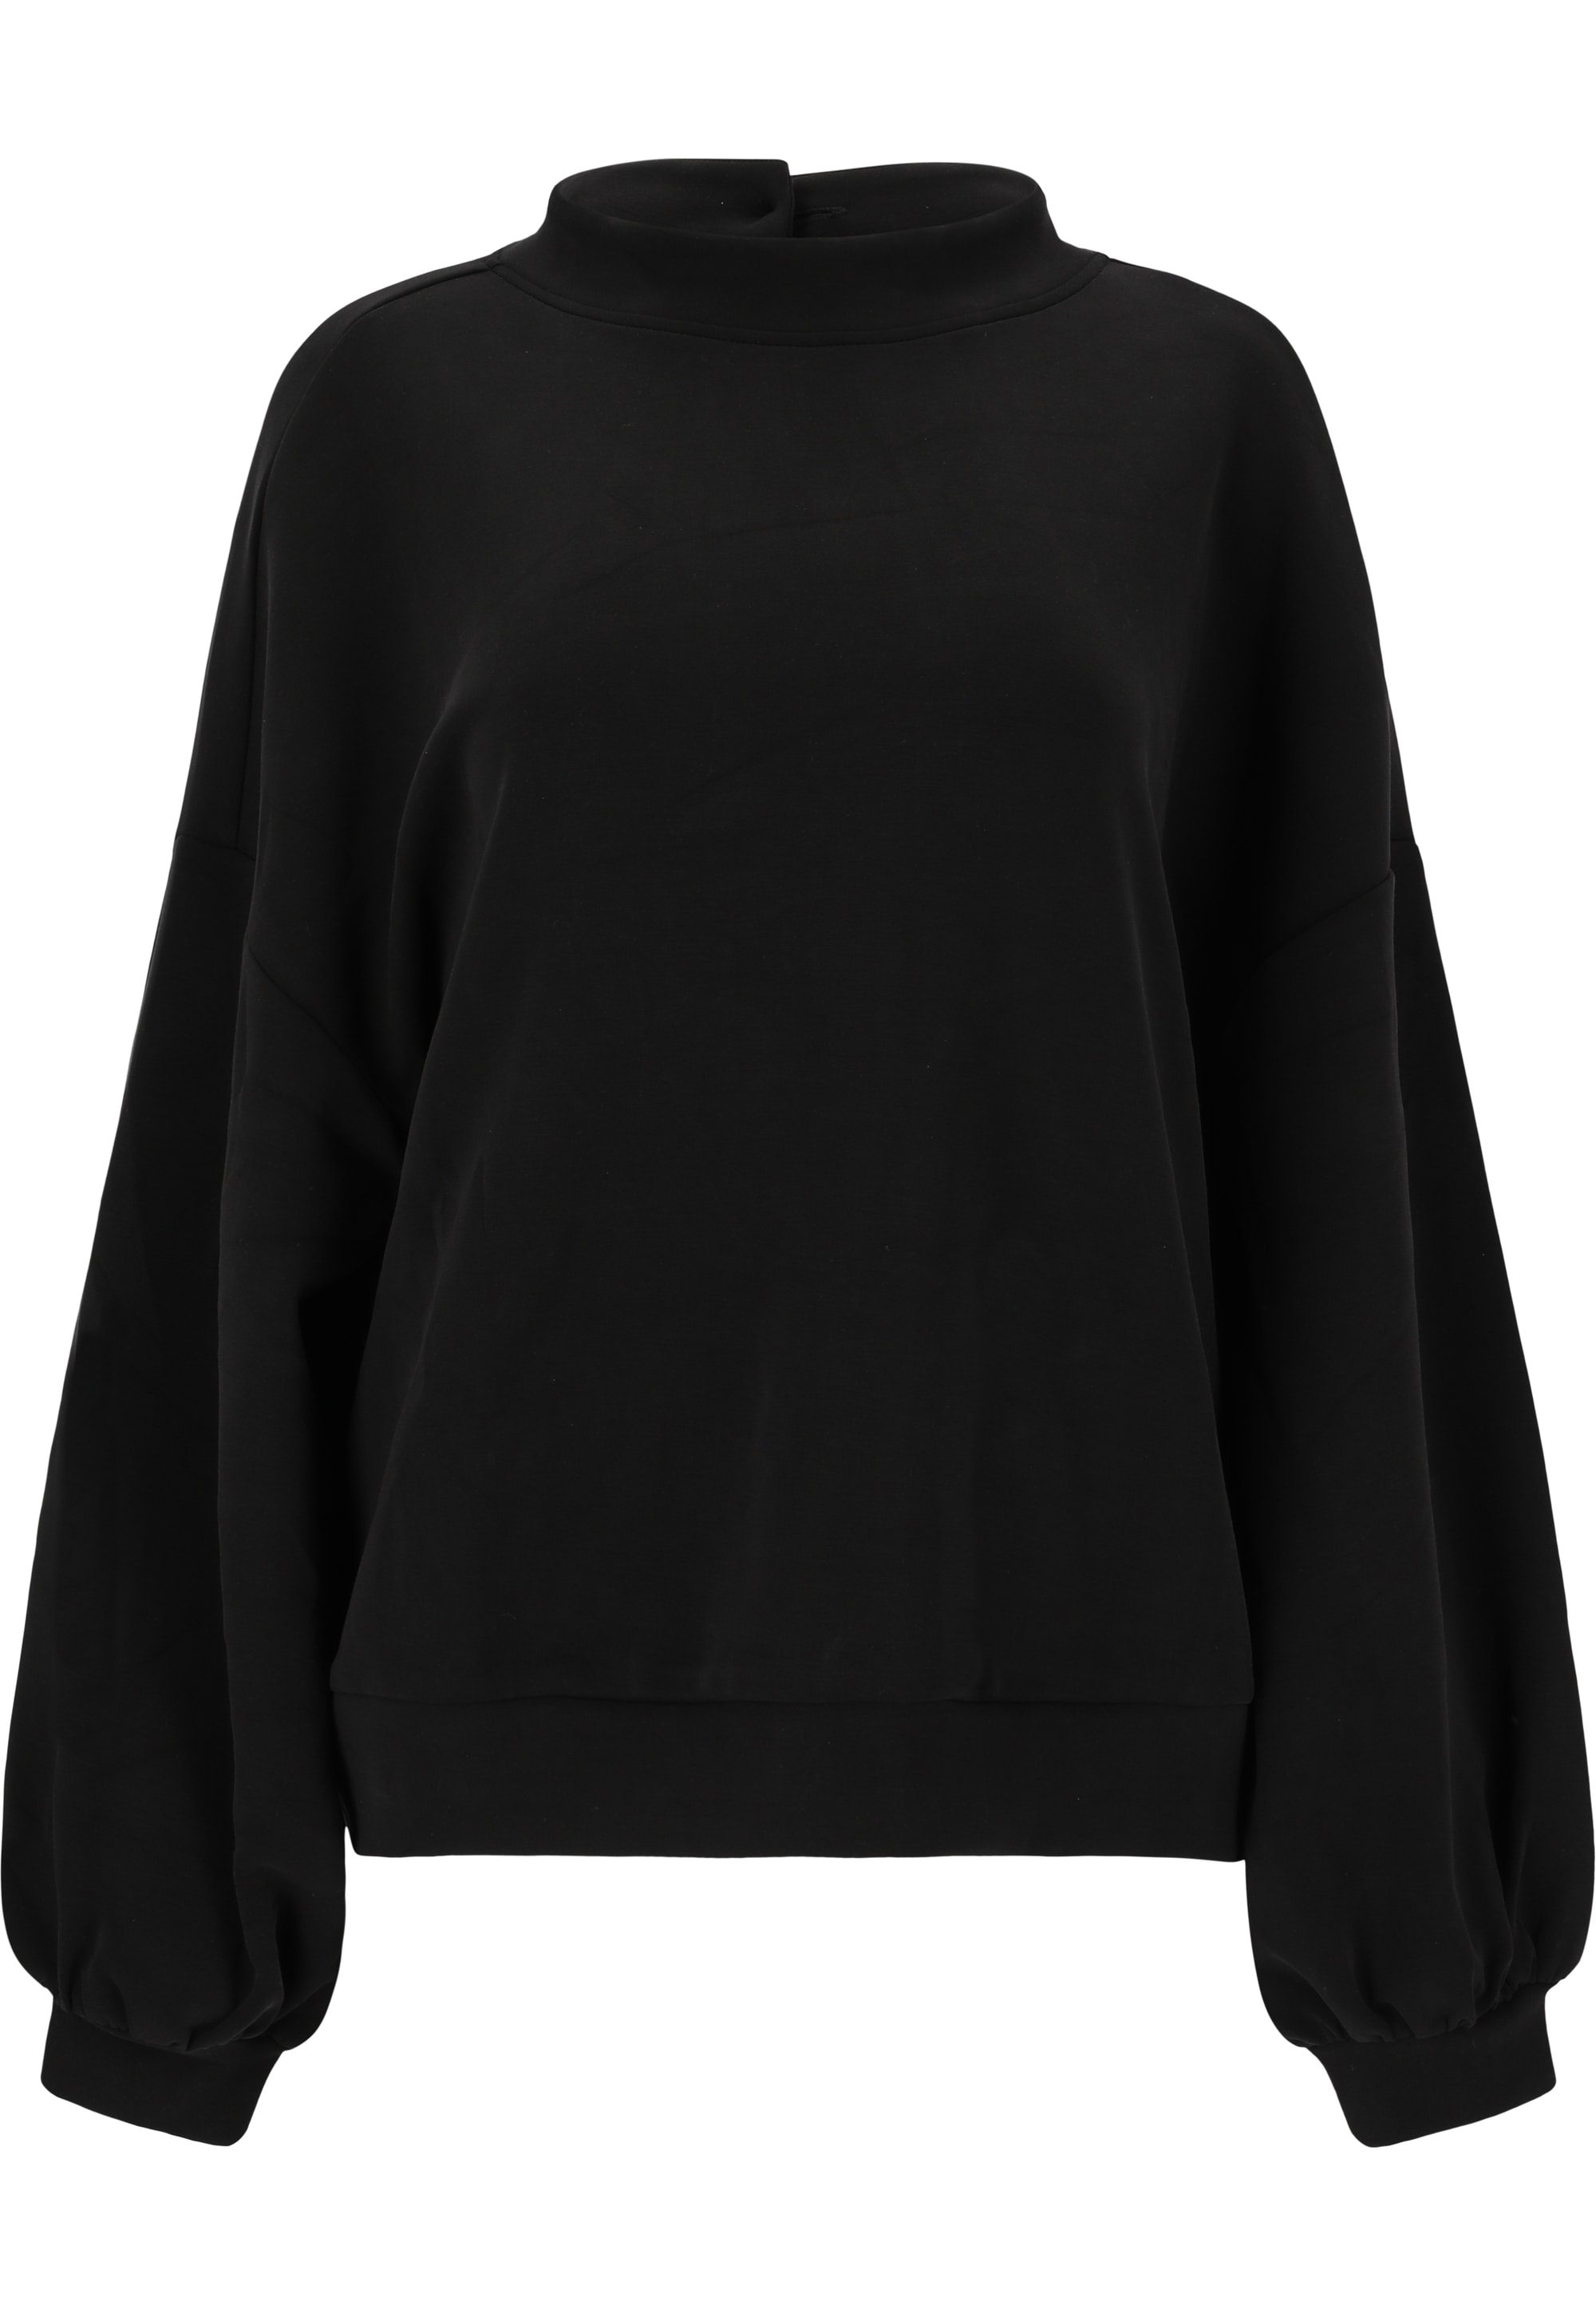 ATHLECIA Sweatshirt »Nikoni«, in einfarbigem Design